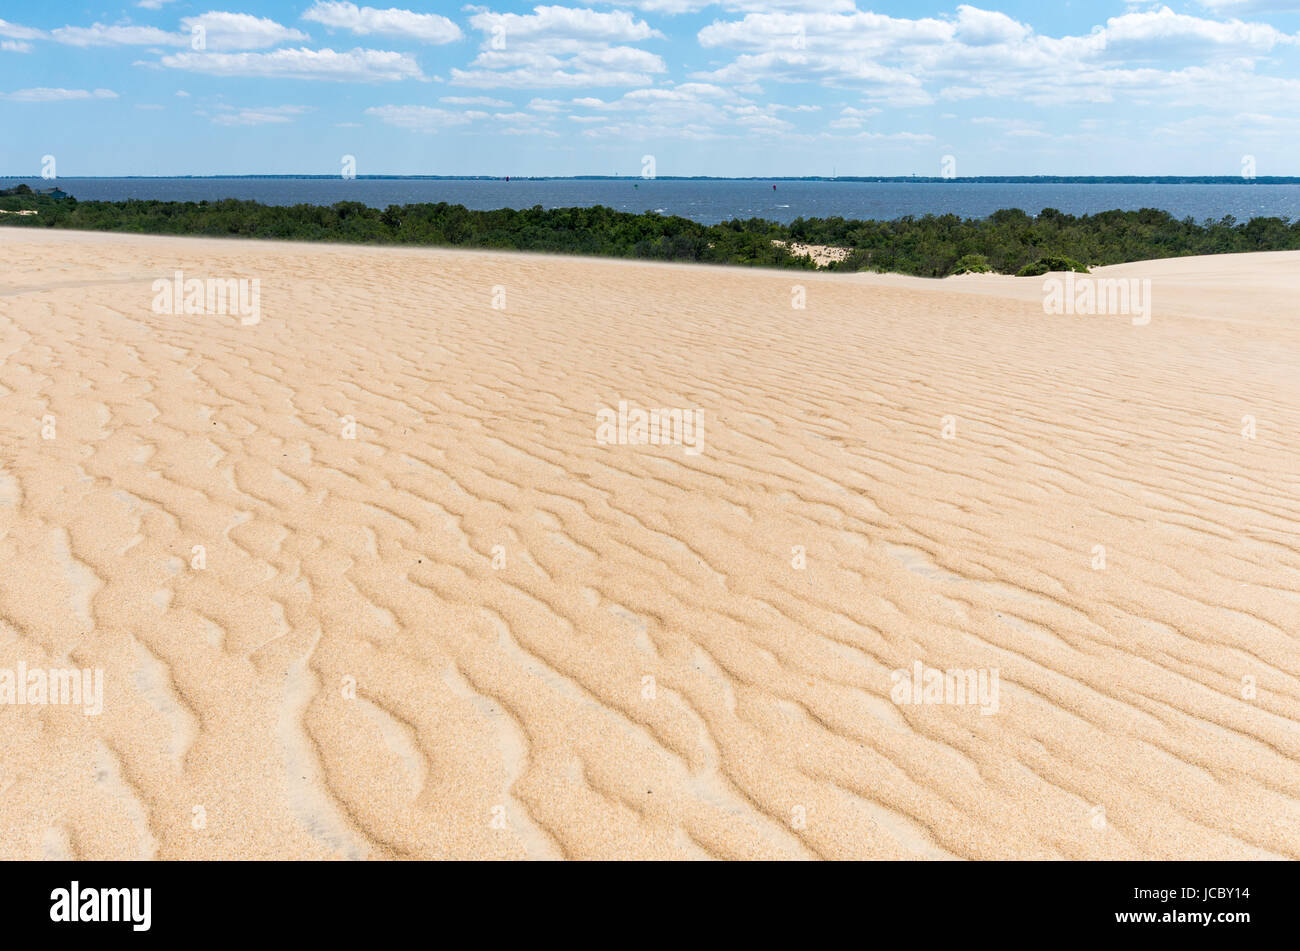 Dunes at Jockey Ridge Outer Banks North Carolina Stock Photo